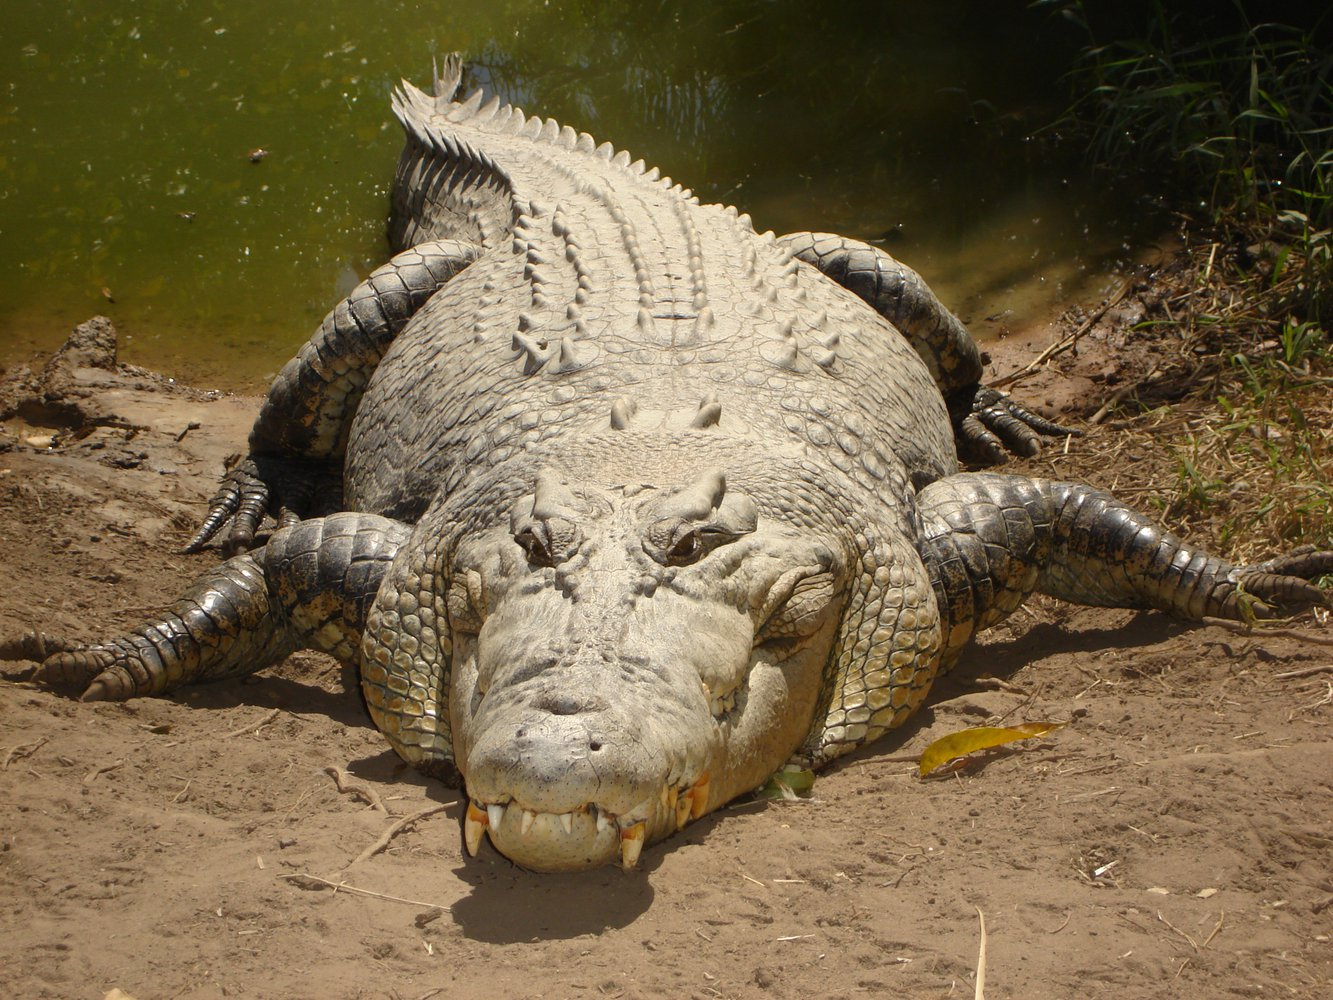 Суеверные жители деревни сочли огромного крокодила демоном и обезглавили его